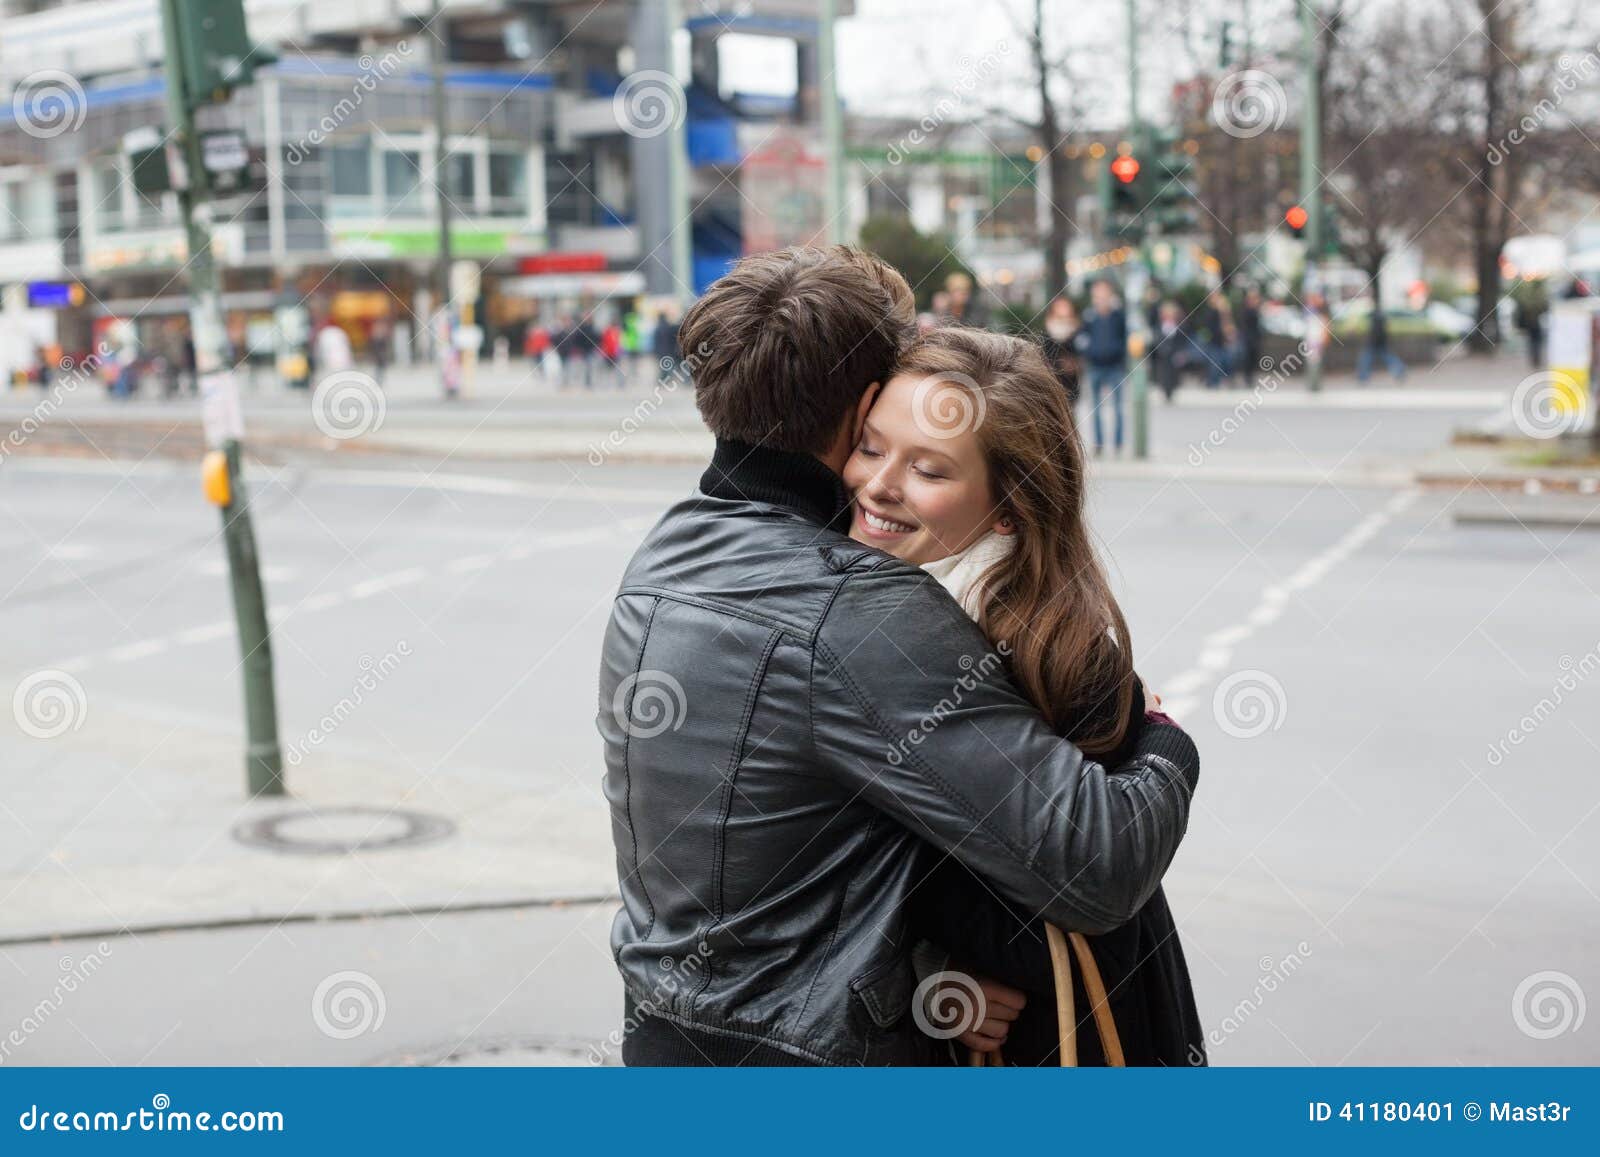 Обниматься с незнакомым мужчиной. Обнимашки на улице. Пара обнимается на улице. Девушки обнимаются на улице. Обнимашки парочек на улице.